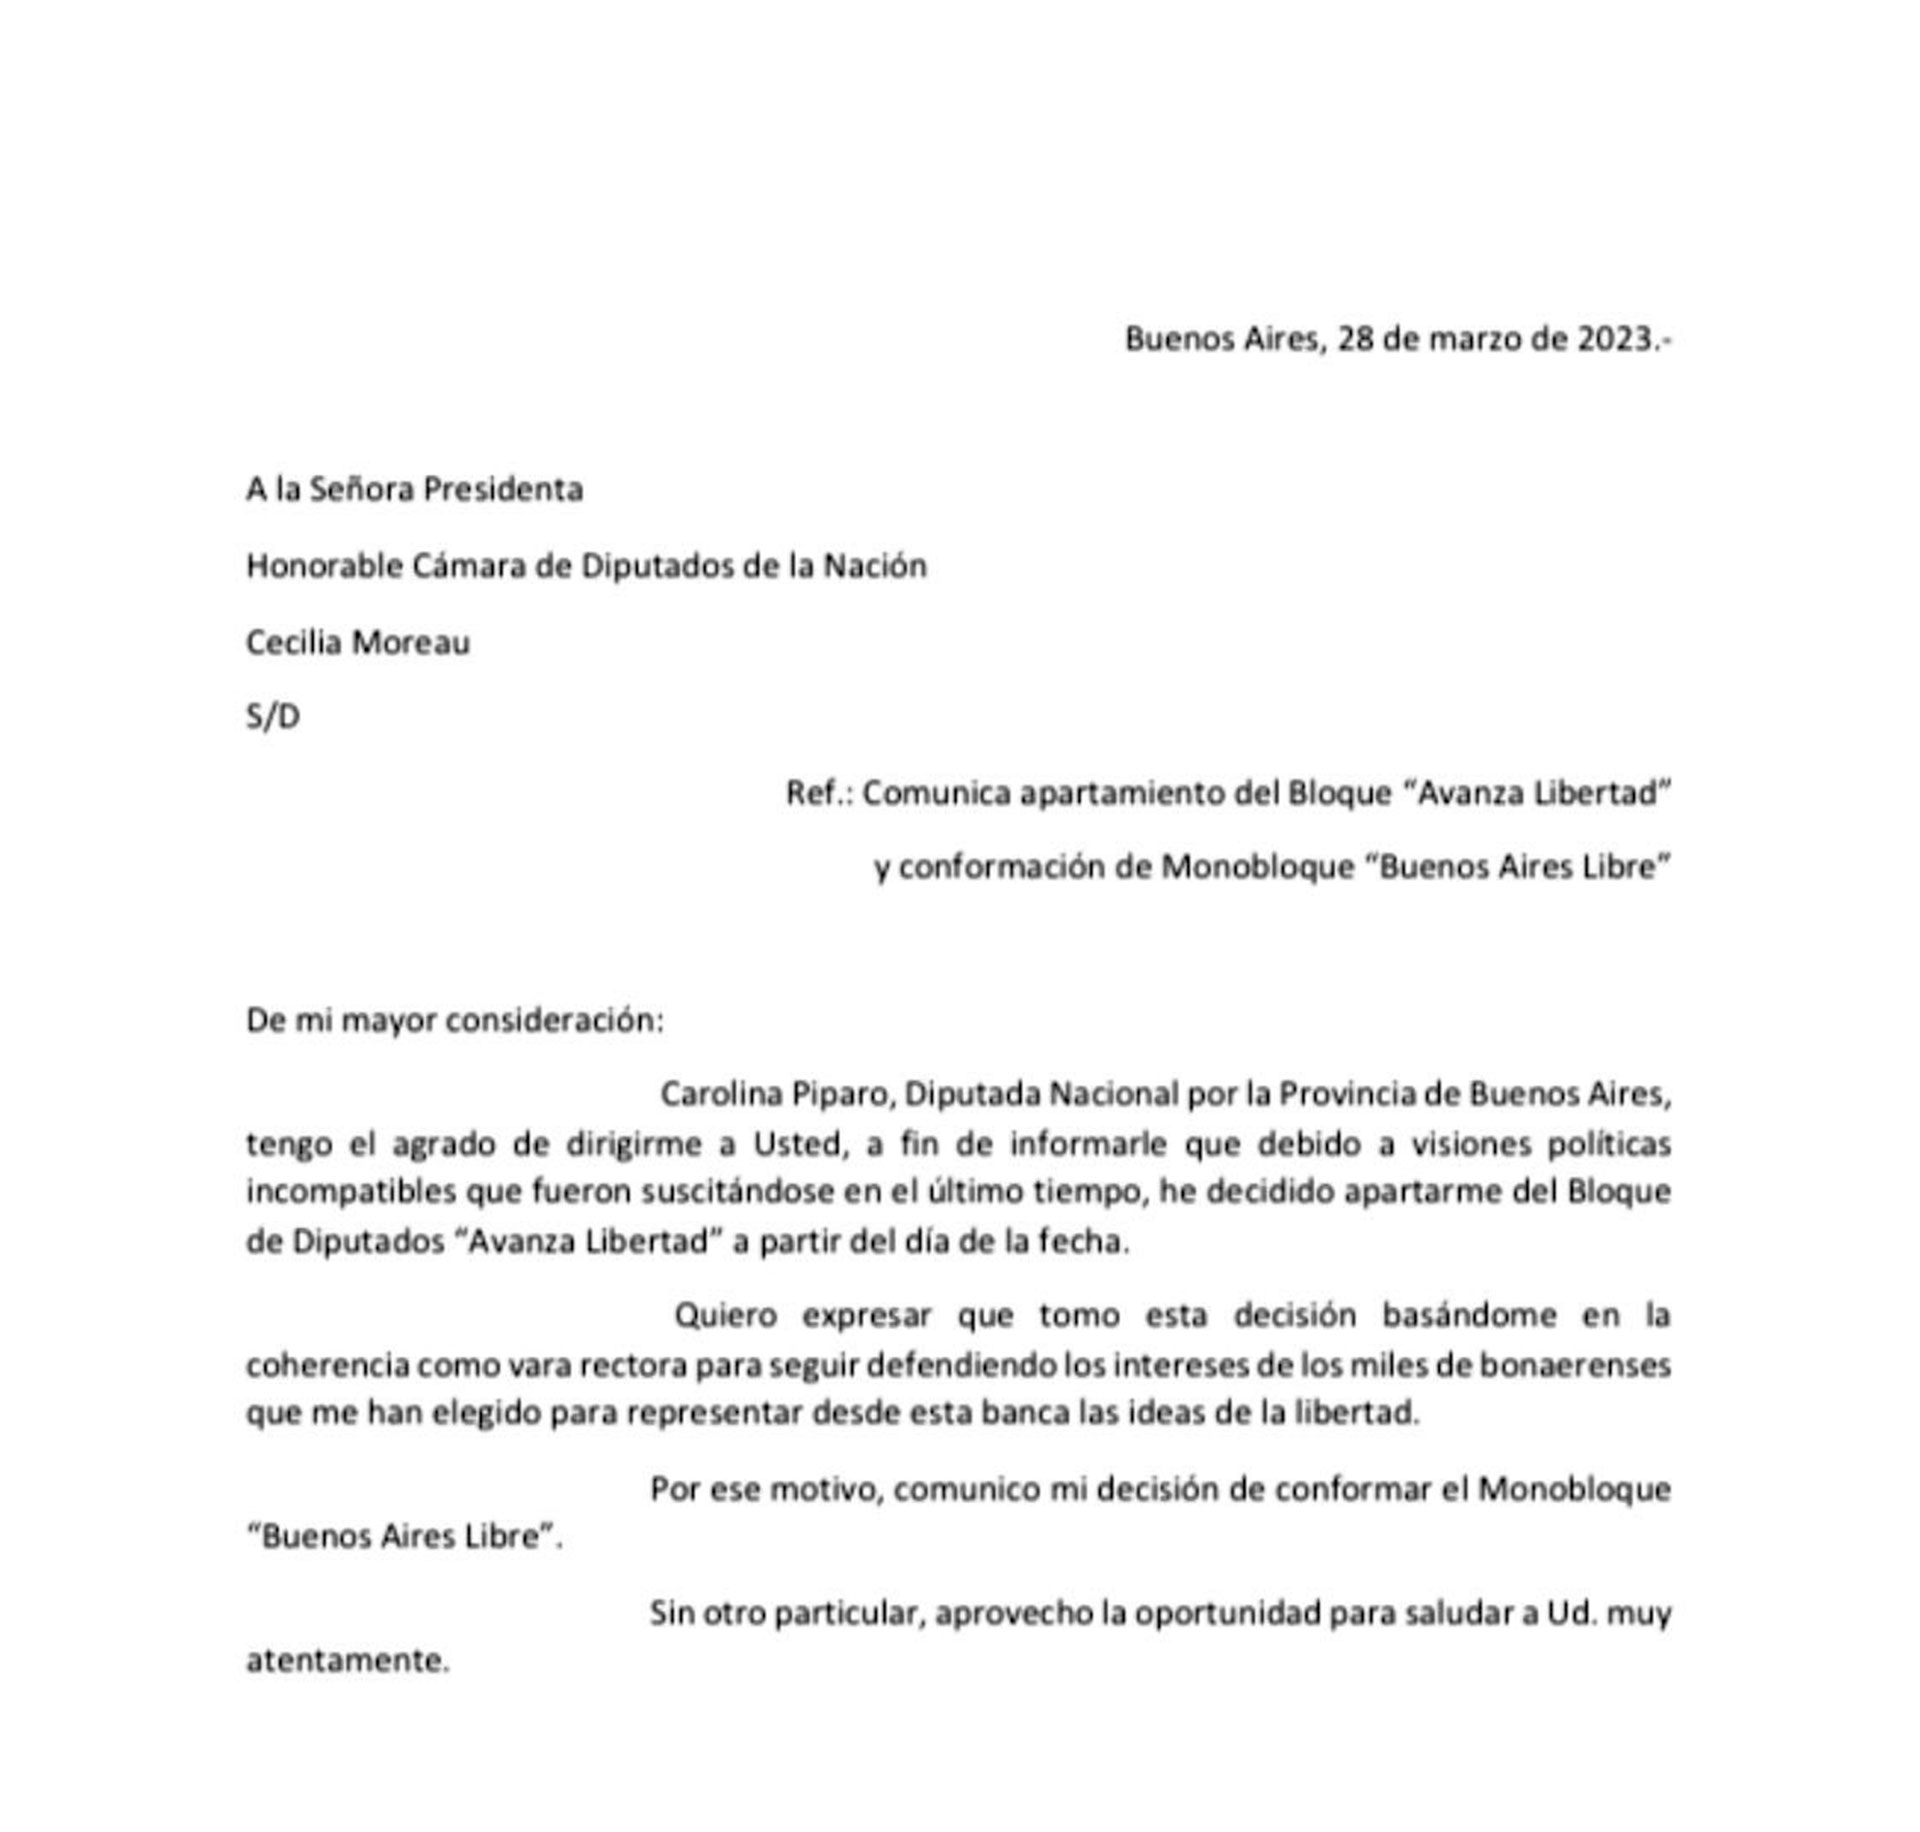 La carta de renuncia de Carolina Píparo 